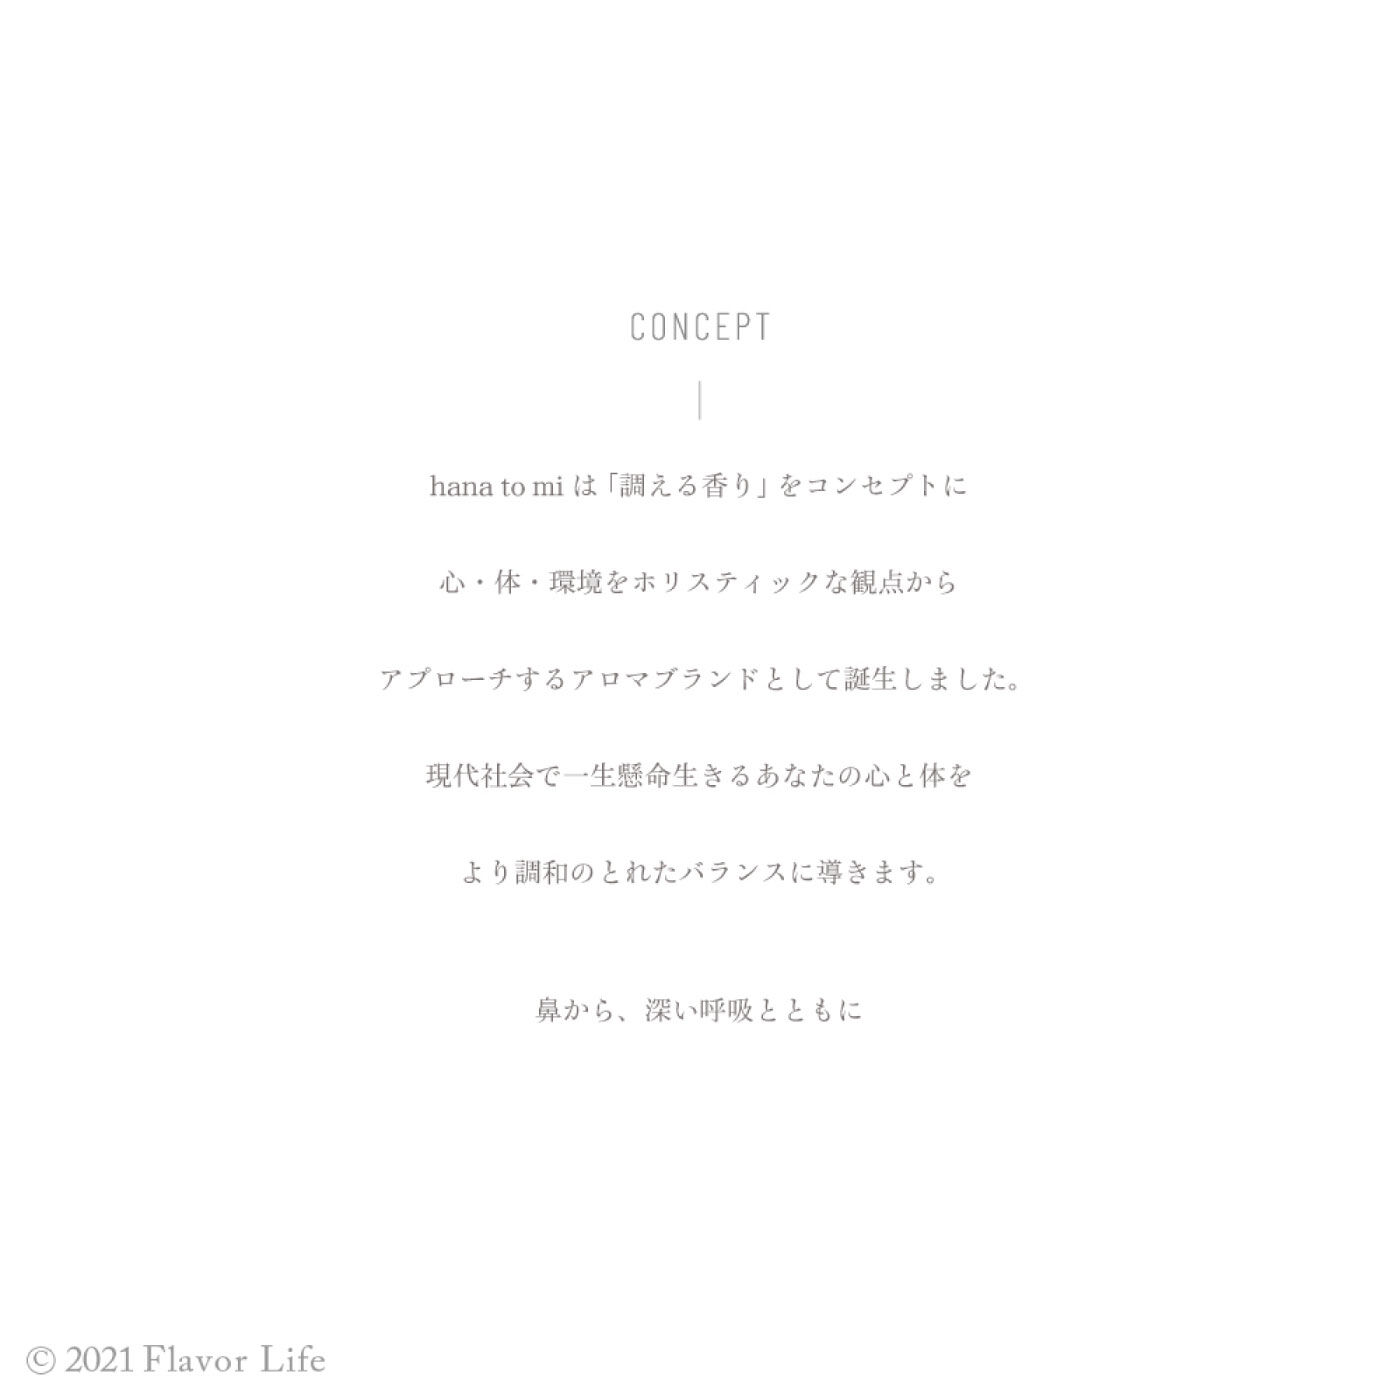 Live in  comfort|【hana to mi】ロールオンアロマ 9mL〈カヨウ〉